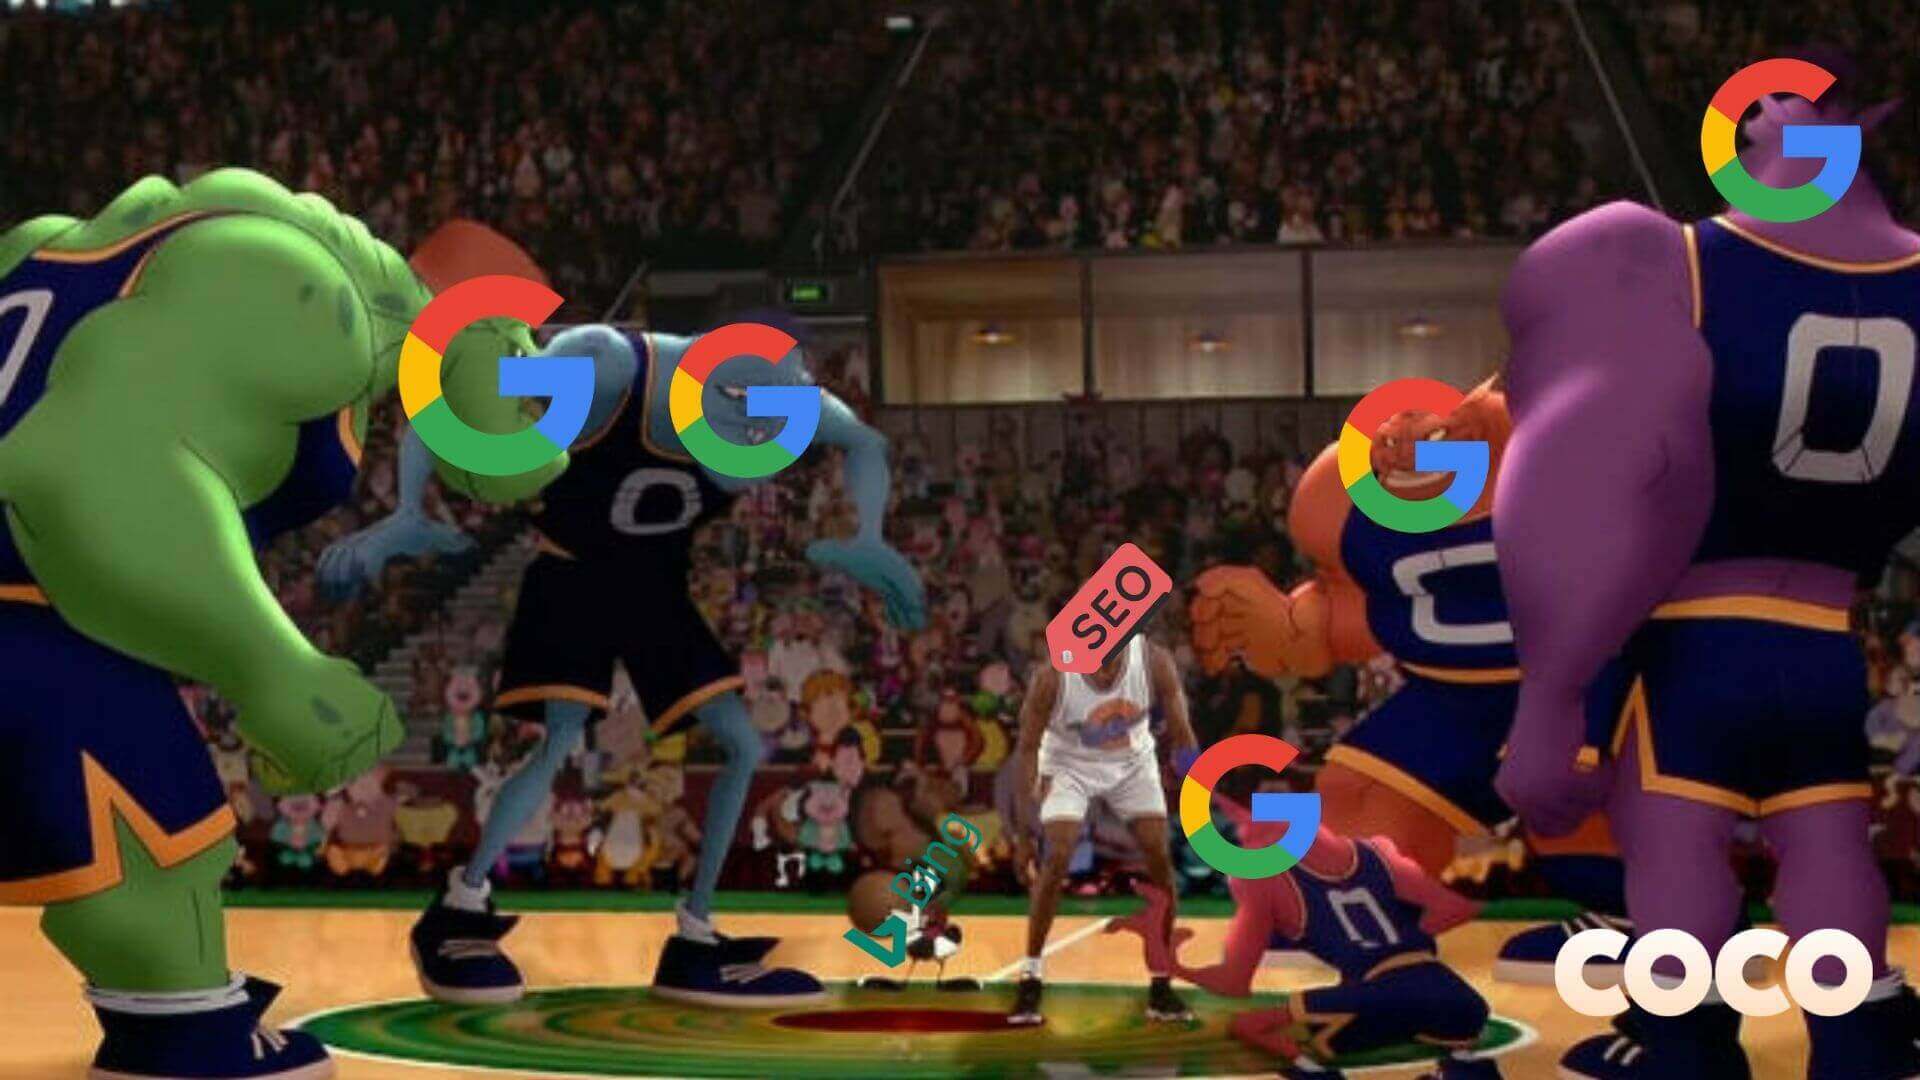 seo vs. google and bing basketball